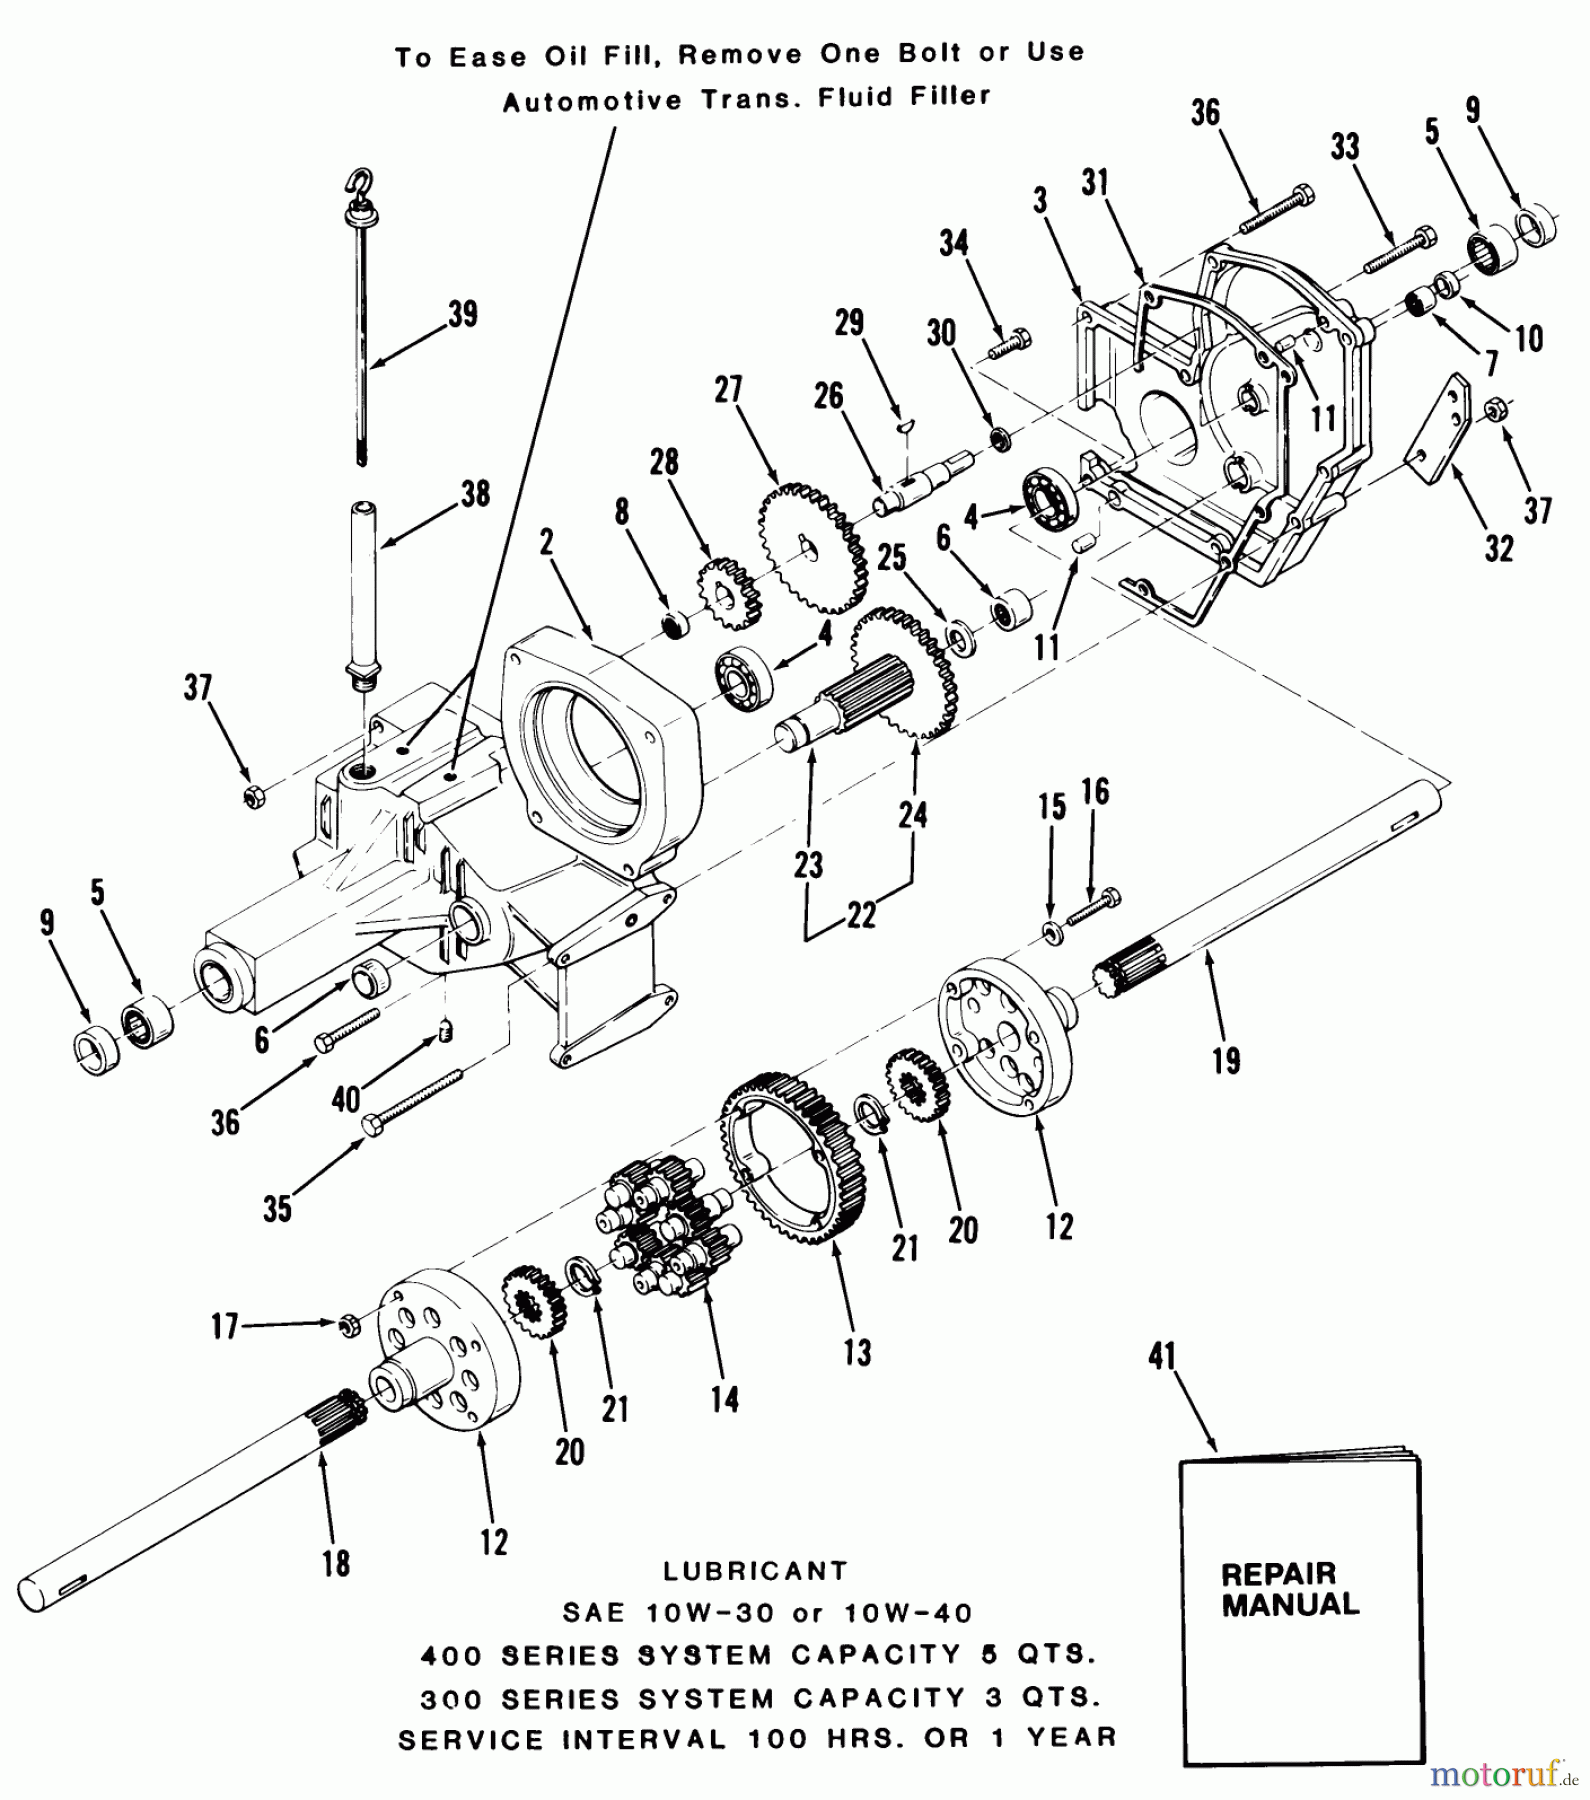  Toro Neu Mowers, Lawn & Garden Tractor Seite 1 31-17KE01 (417-A) - Toro 417-A Garden Tractor, 1985 TRANSAXLE-300/400 SERIES